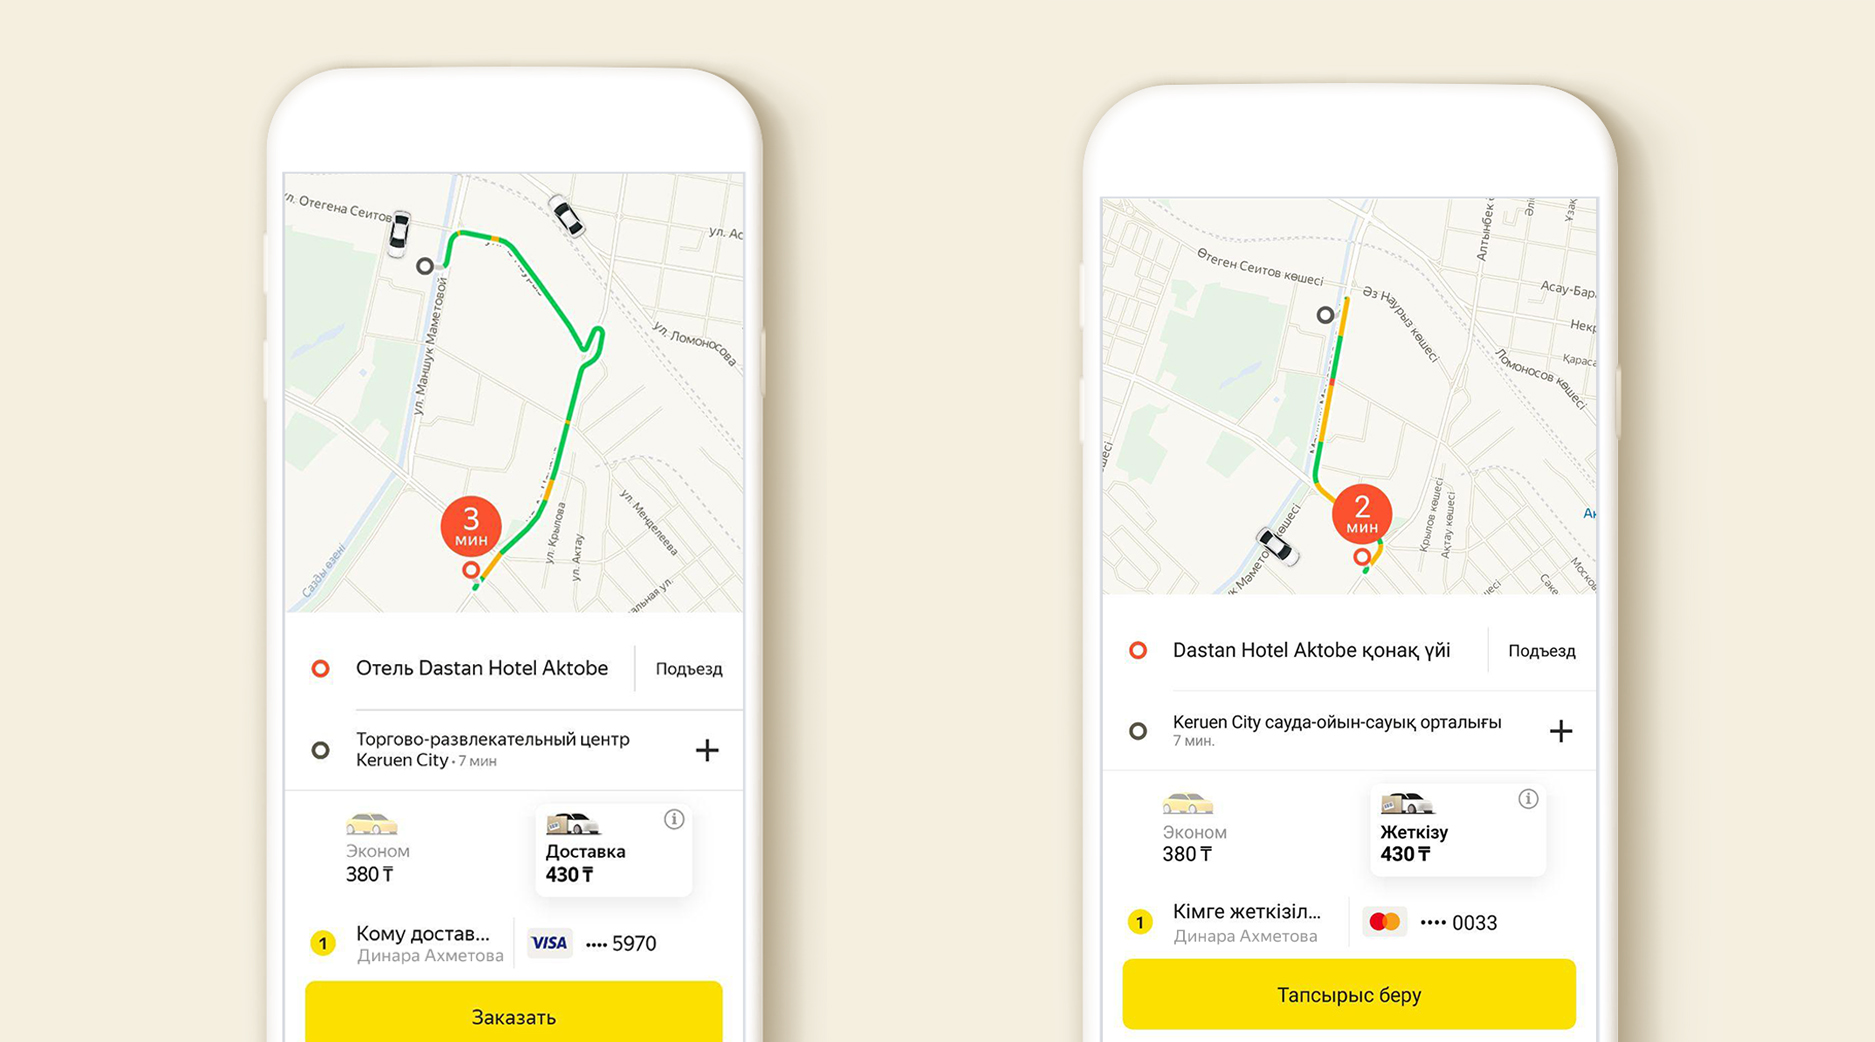 Карта Яндекс такси